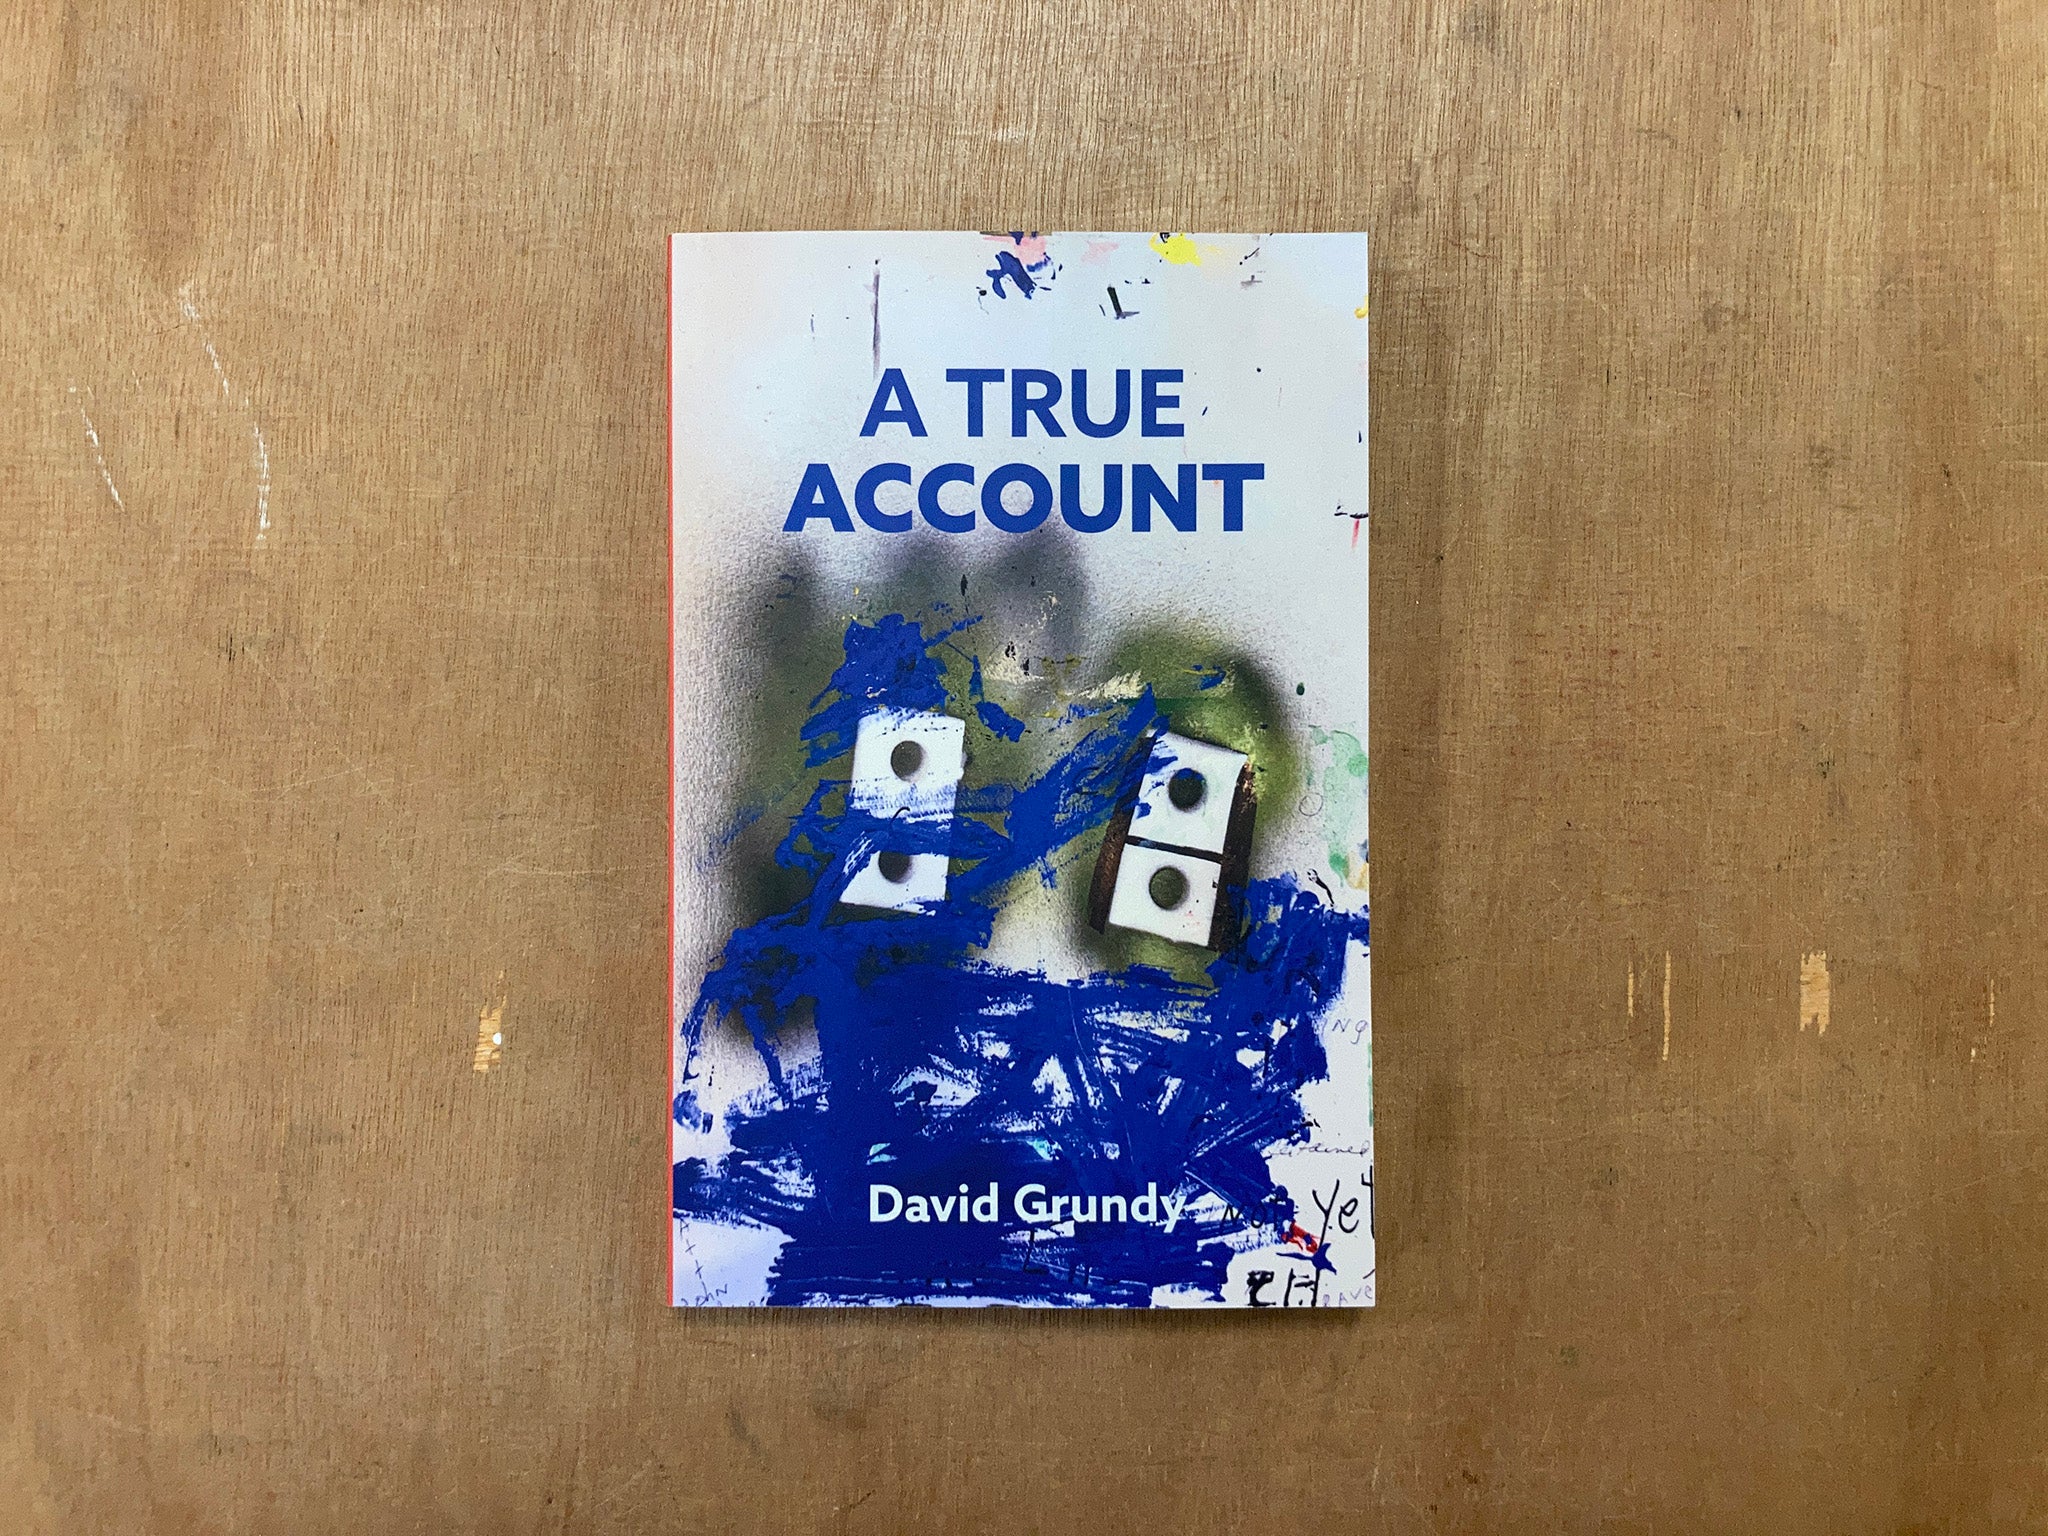 A TRUE ACCOUNT by David Grundy